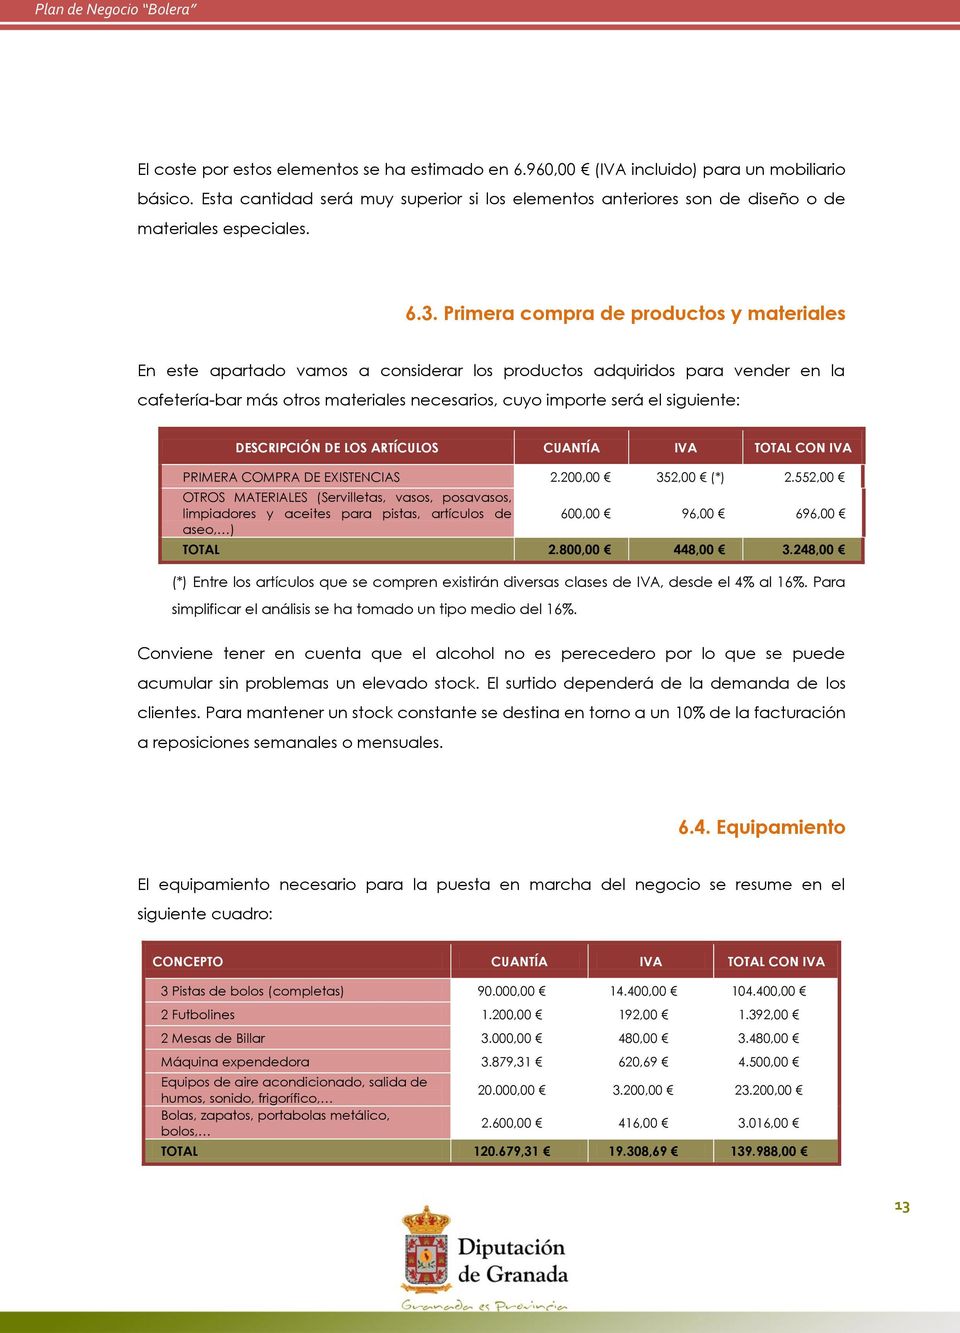 siguiente: DESCRIPCIÓN DE LOS ARTÍCULOS CUANTÍA IVA TOTAL CON IVA PRIMERA COMPRA DE EXISTENCIAS 2.200,00 352,00 (*) 2.